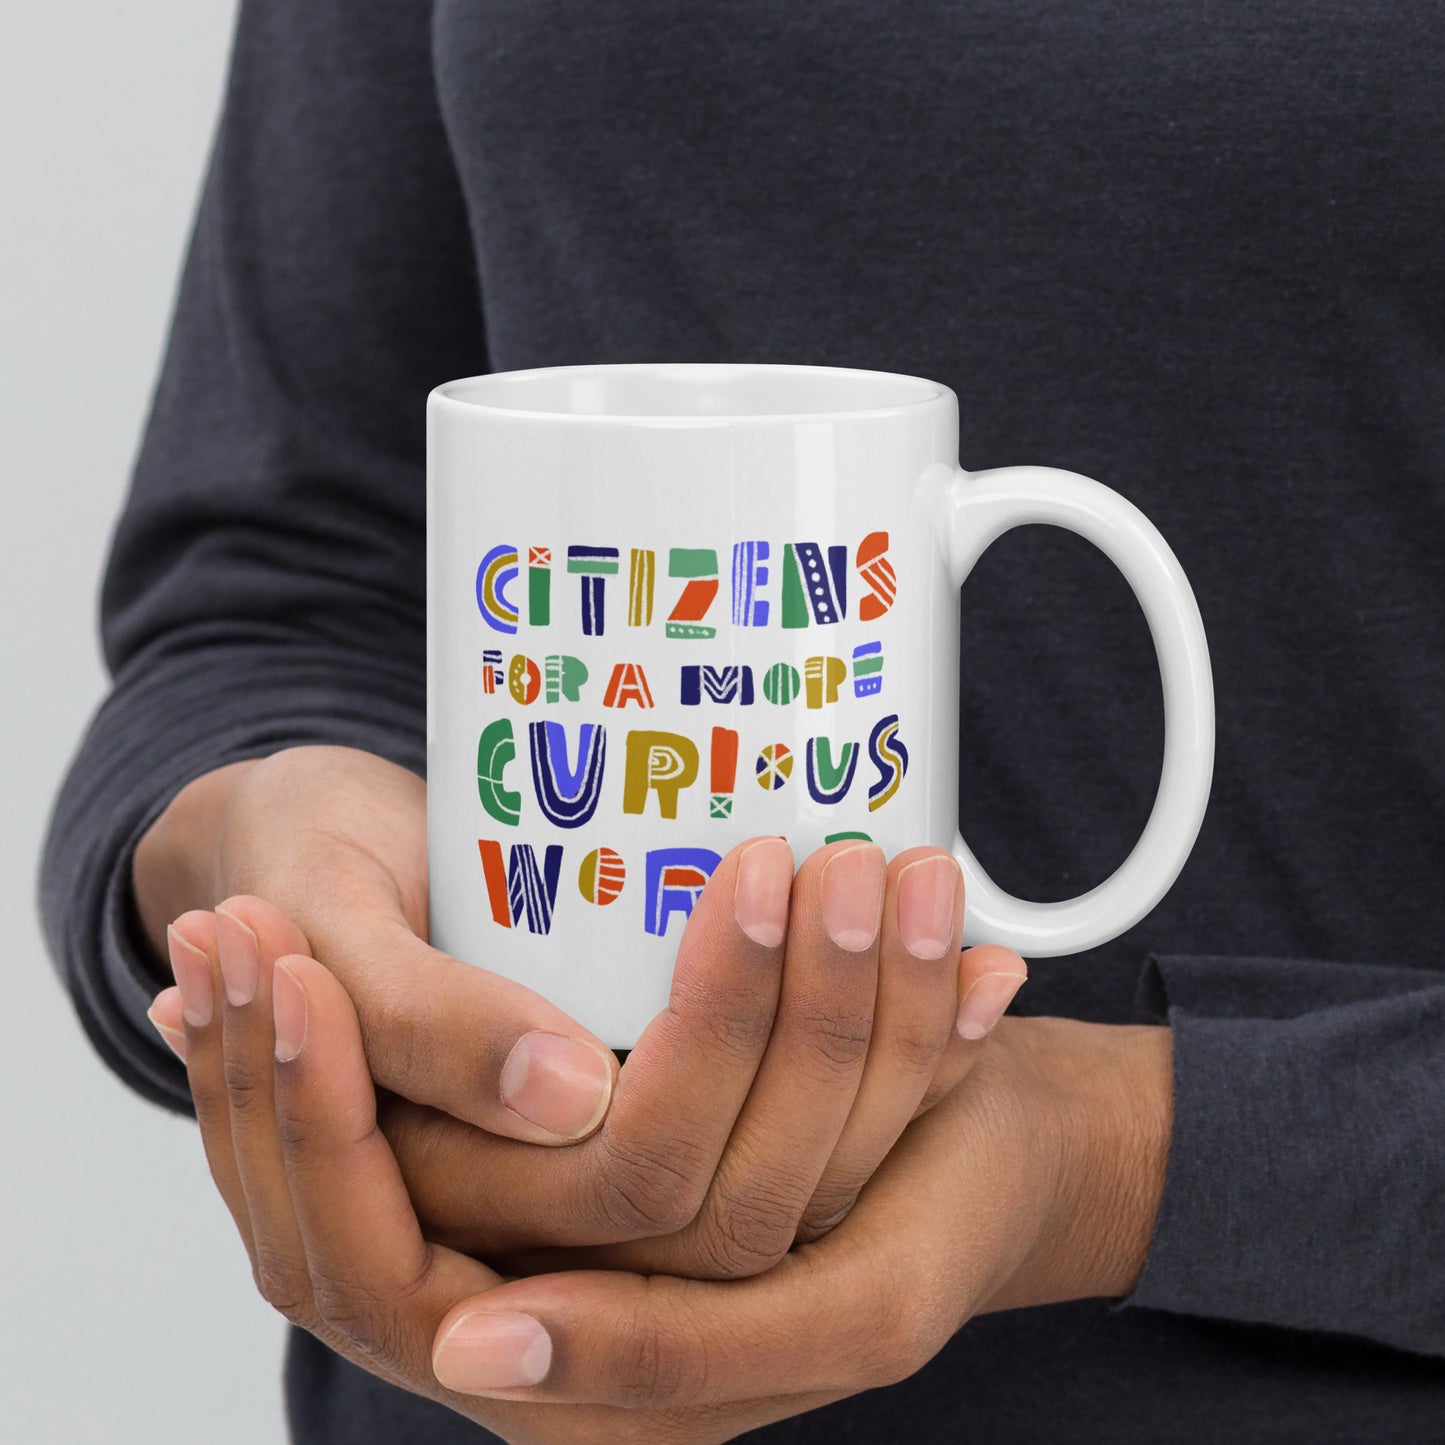 Citizens For a More Curious World White 11 oz. Mug